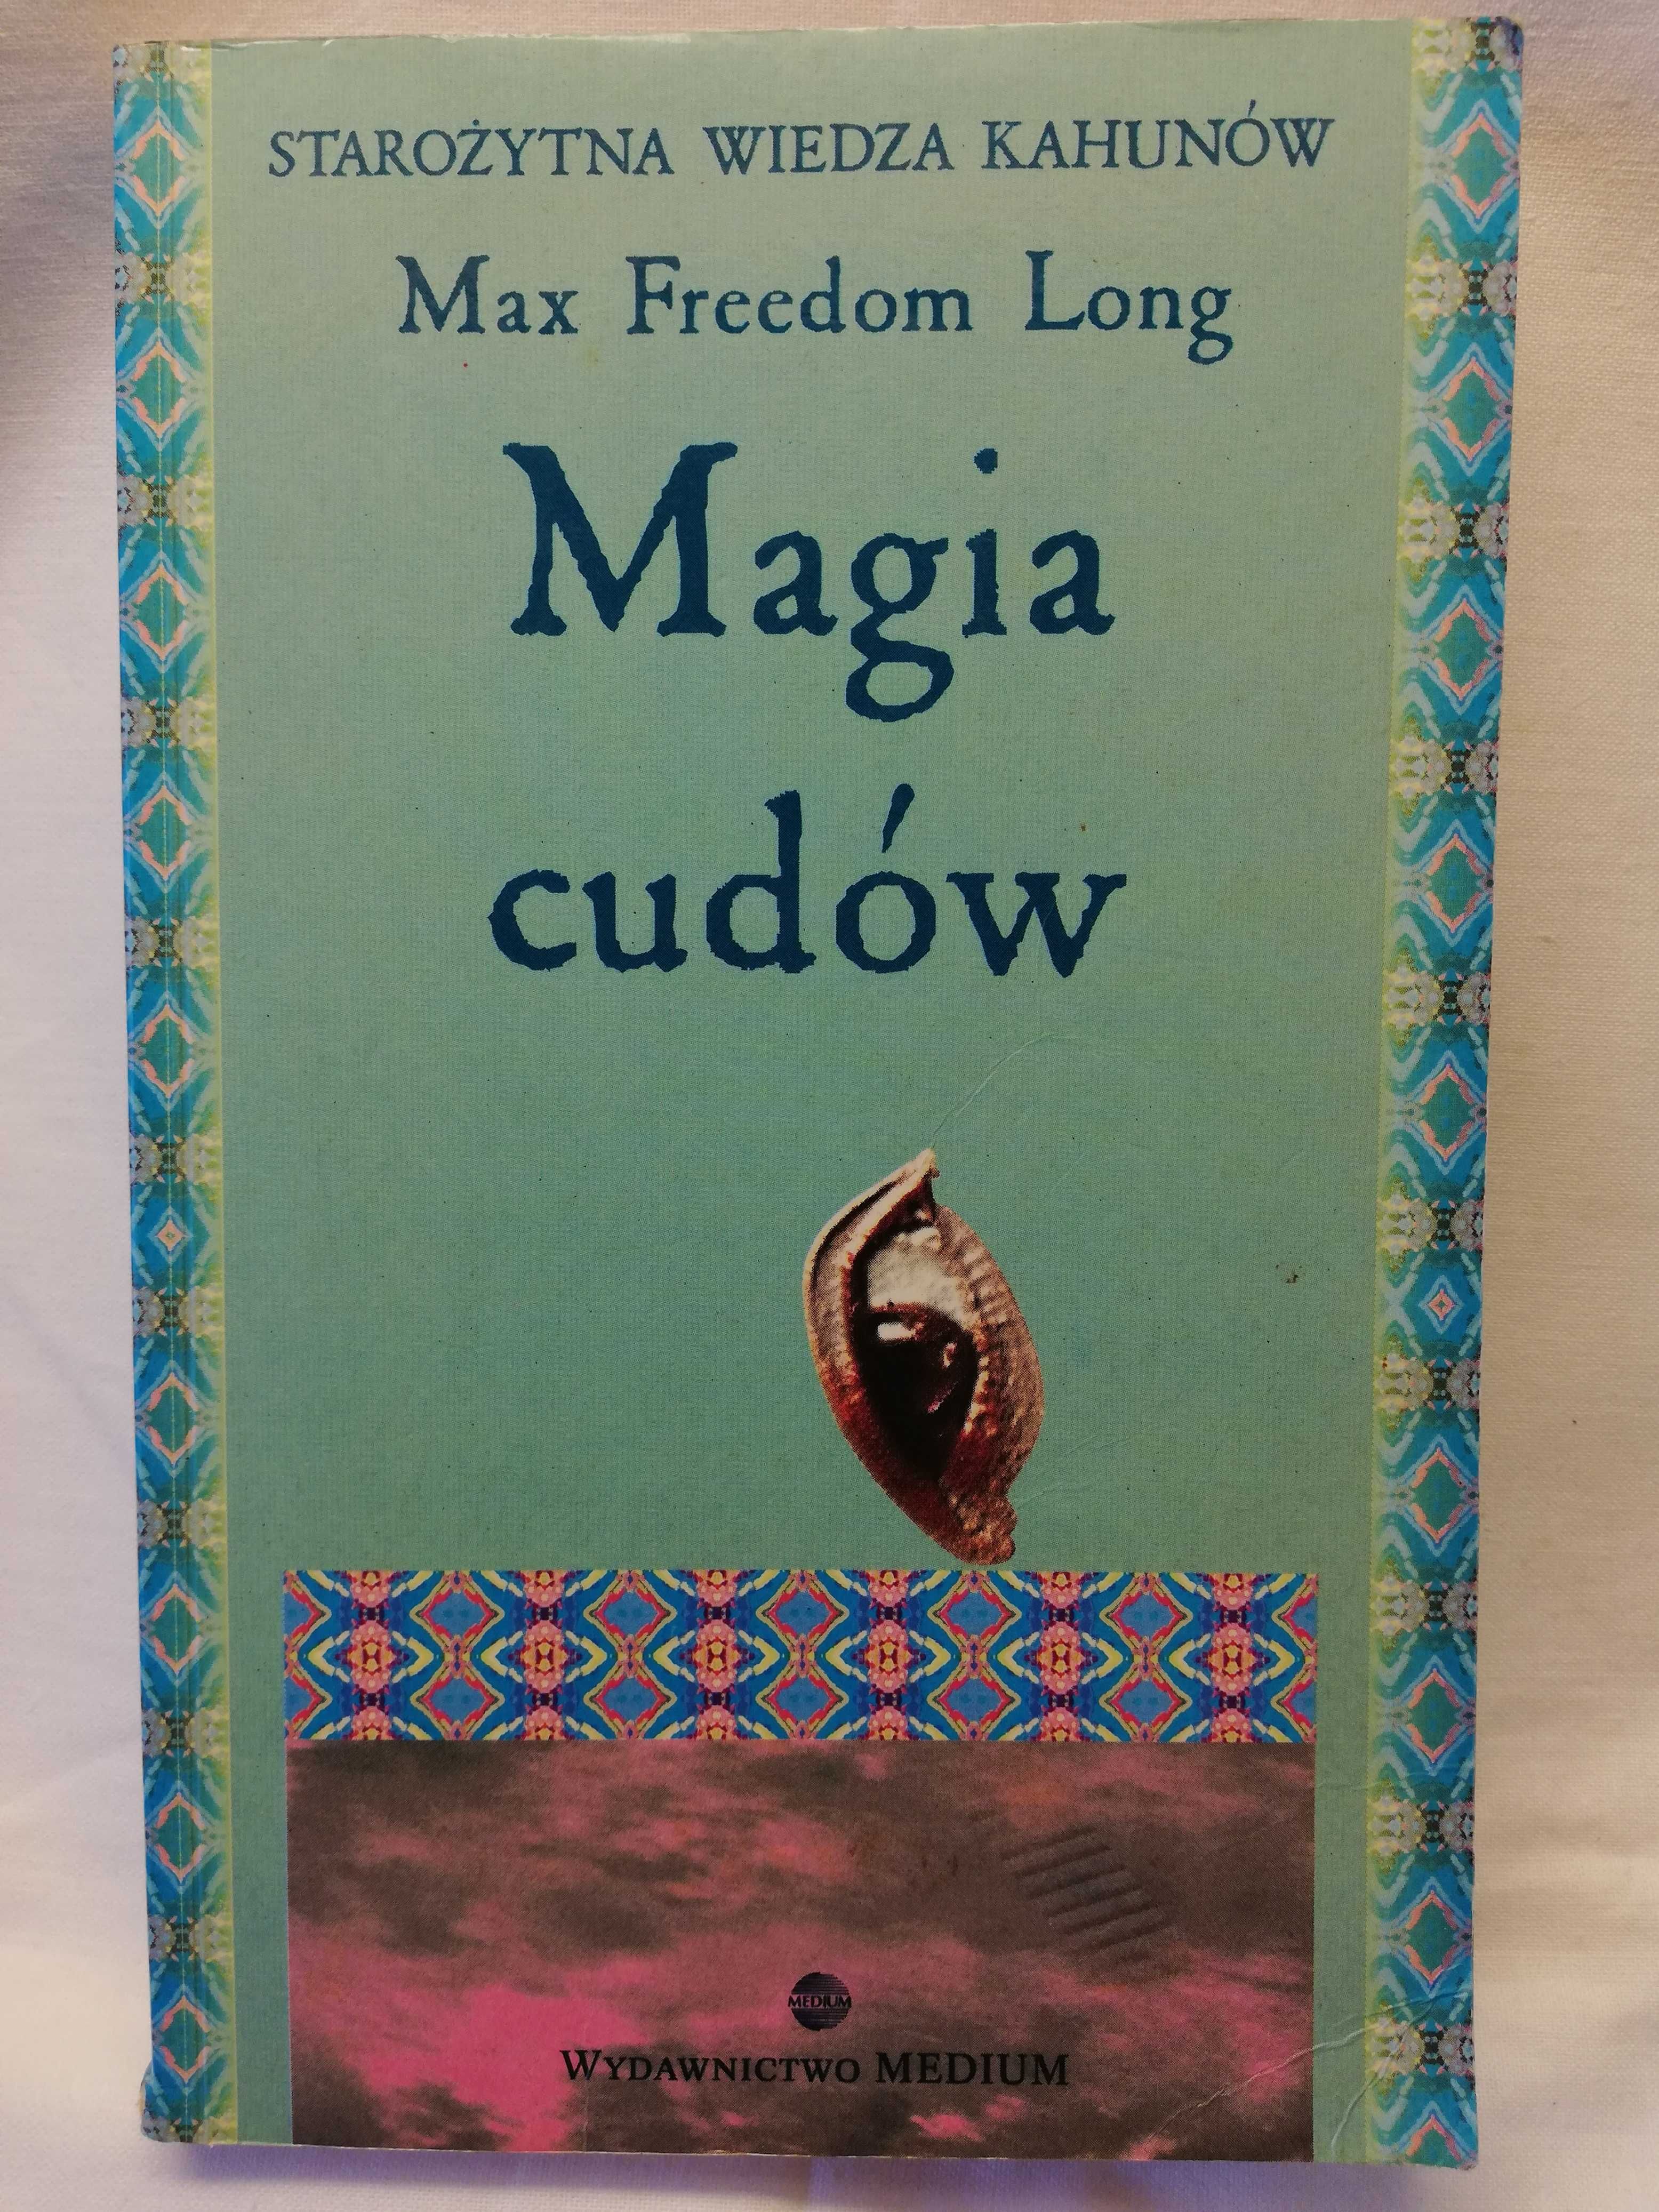 Magia cudów - Max Freedom Long - 1995 rok